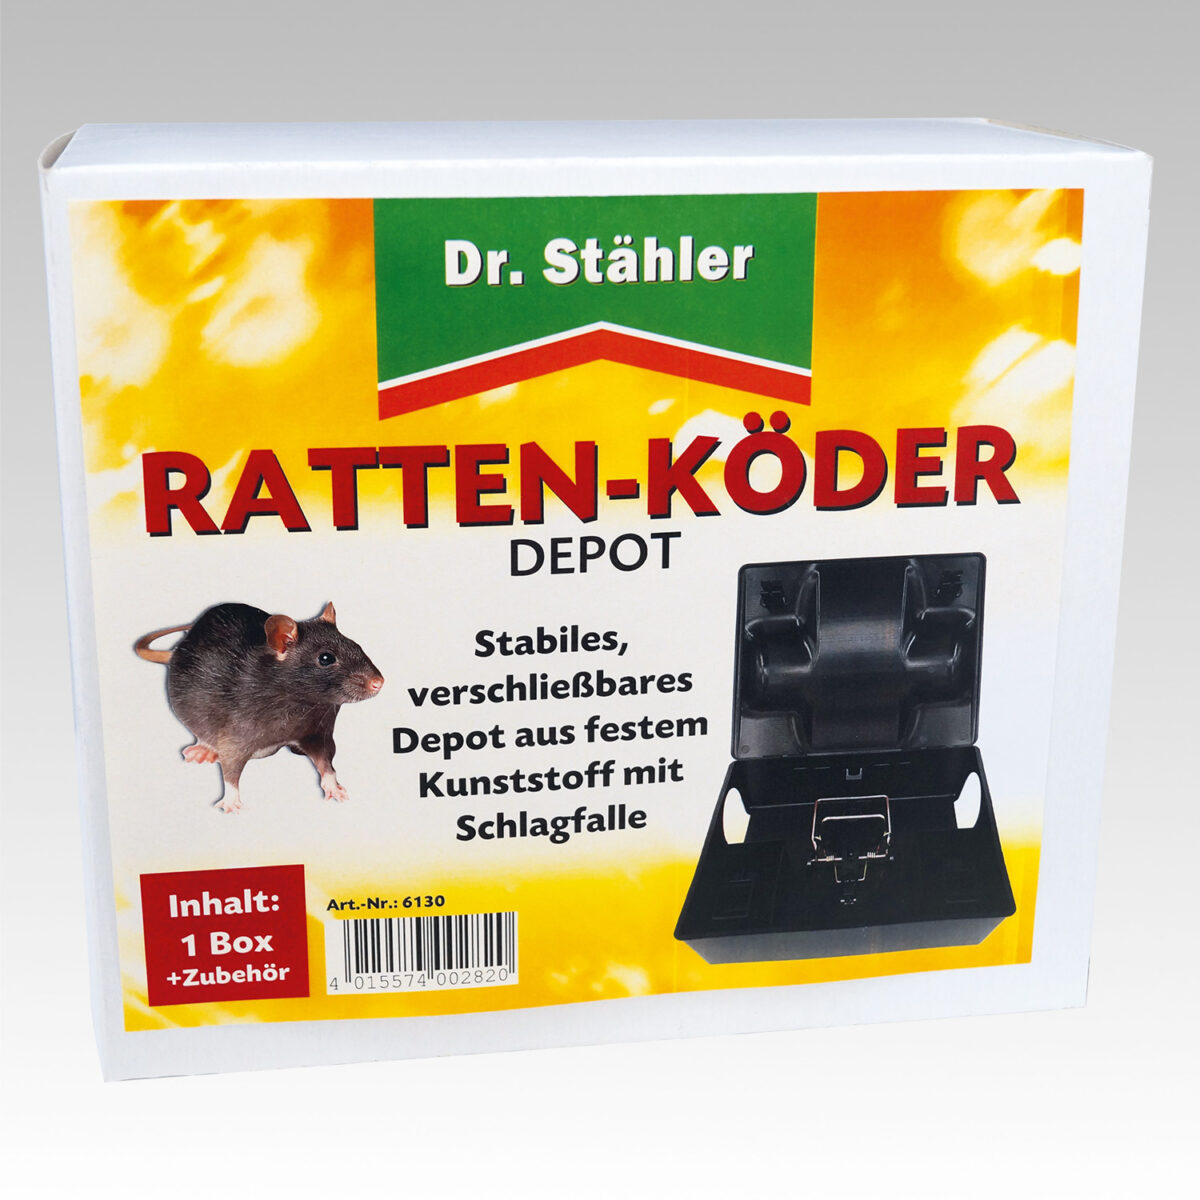 6130 Rattenkoeder Depot FS